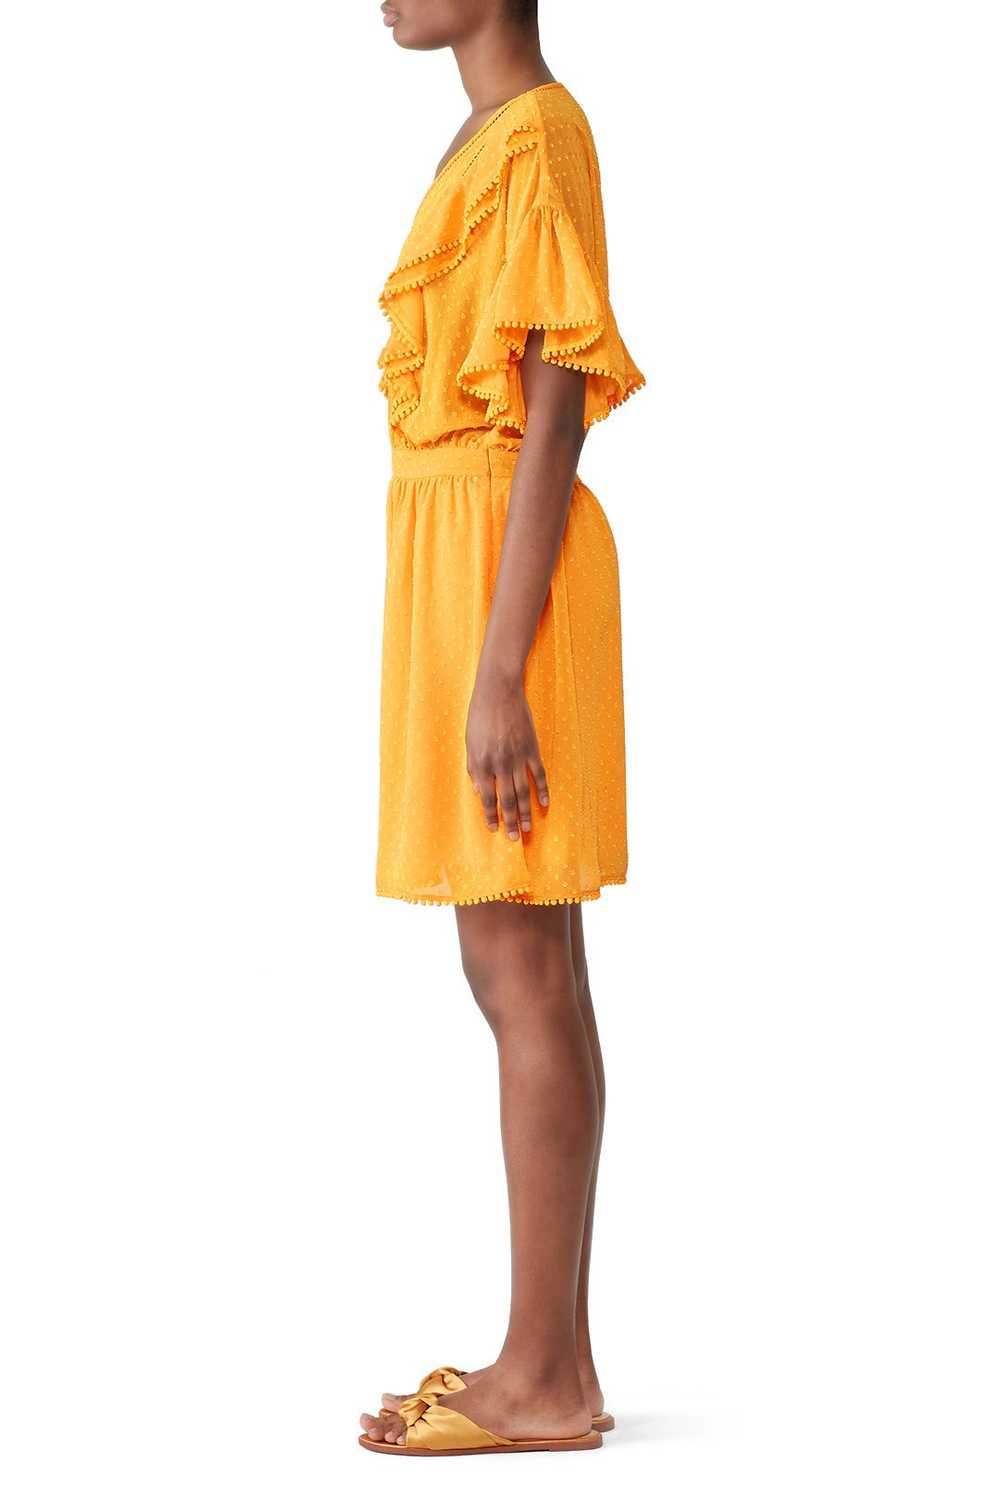 Scotch & Soda Yellow Ruffle Lace Dress - image 3